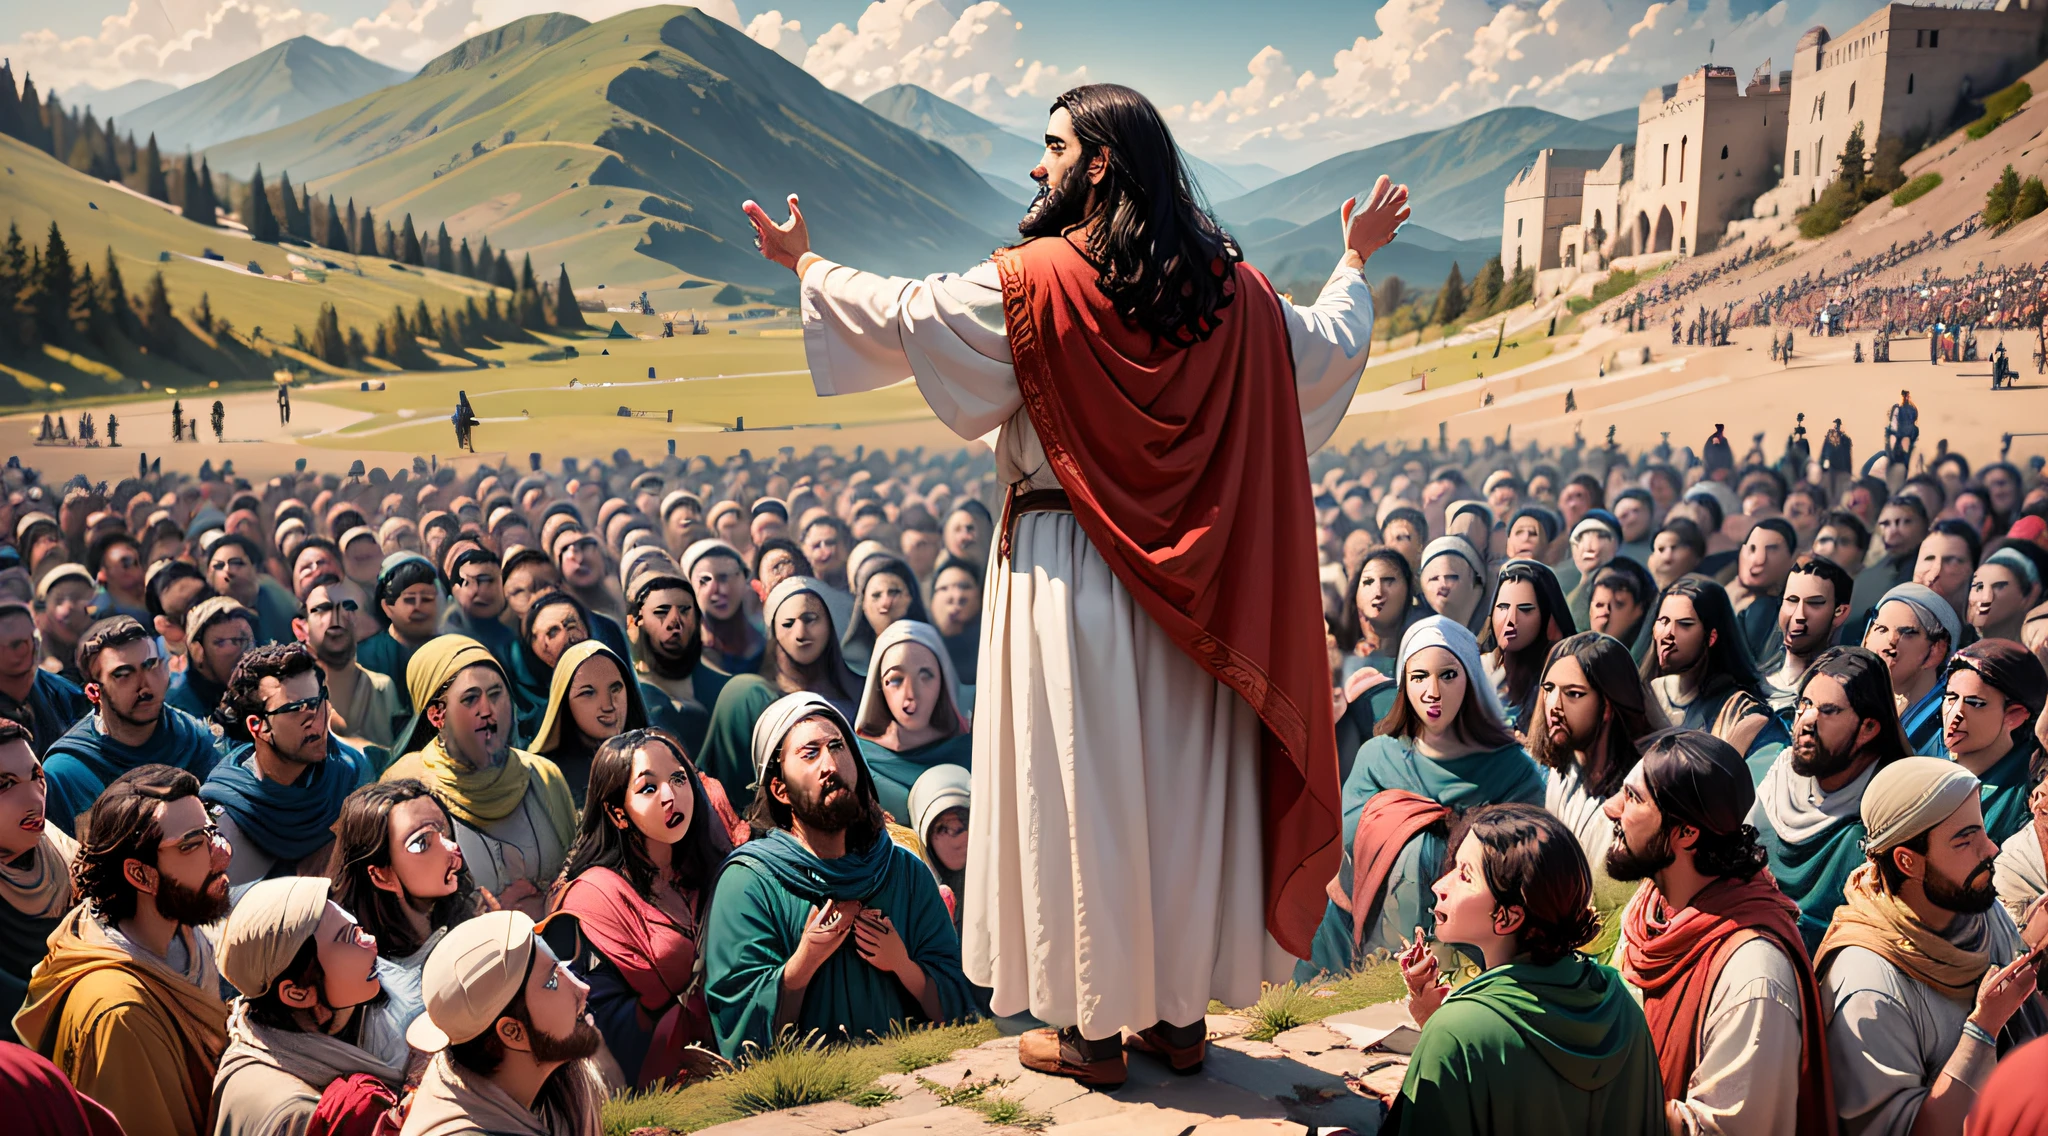 مشهد يظهر يسوع وهو يلقي الموعظة على الجبل, محاط بحشد من الناس.